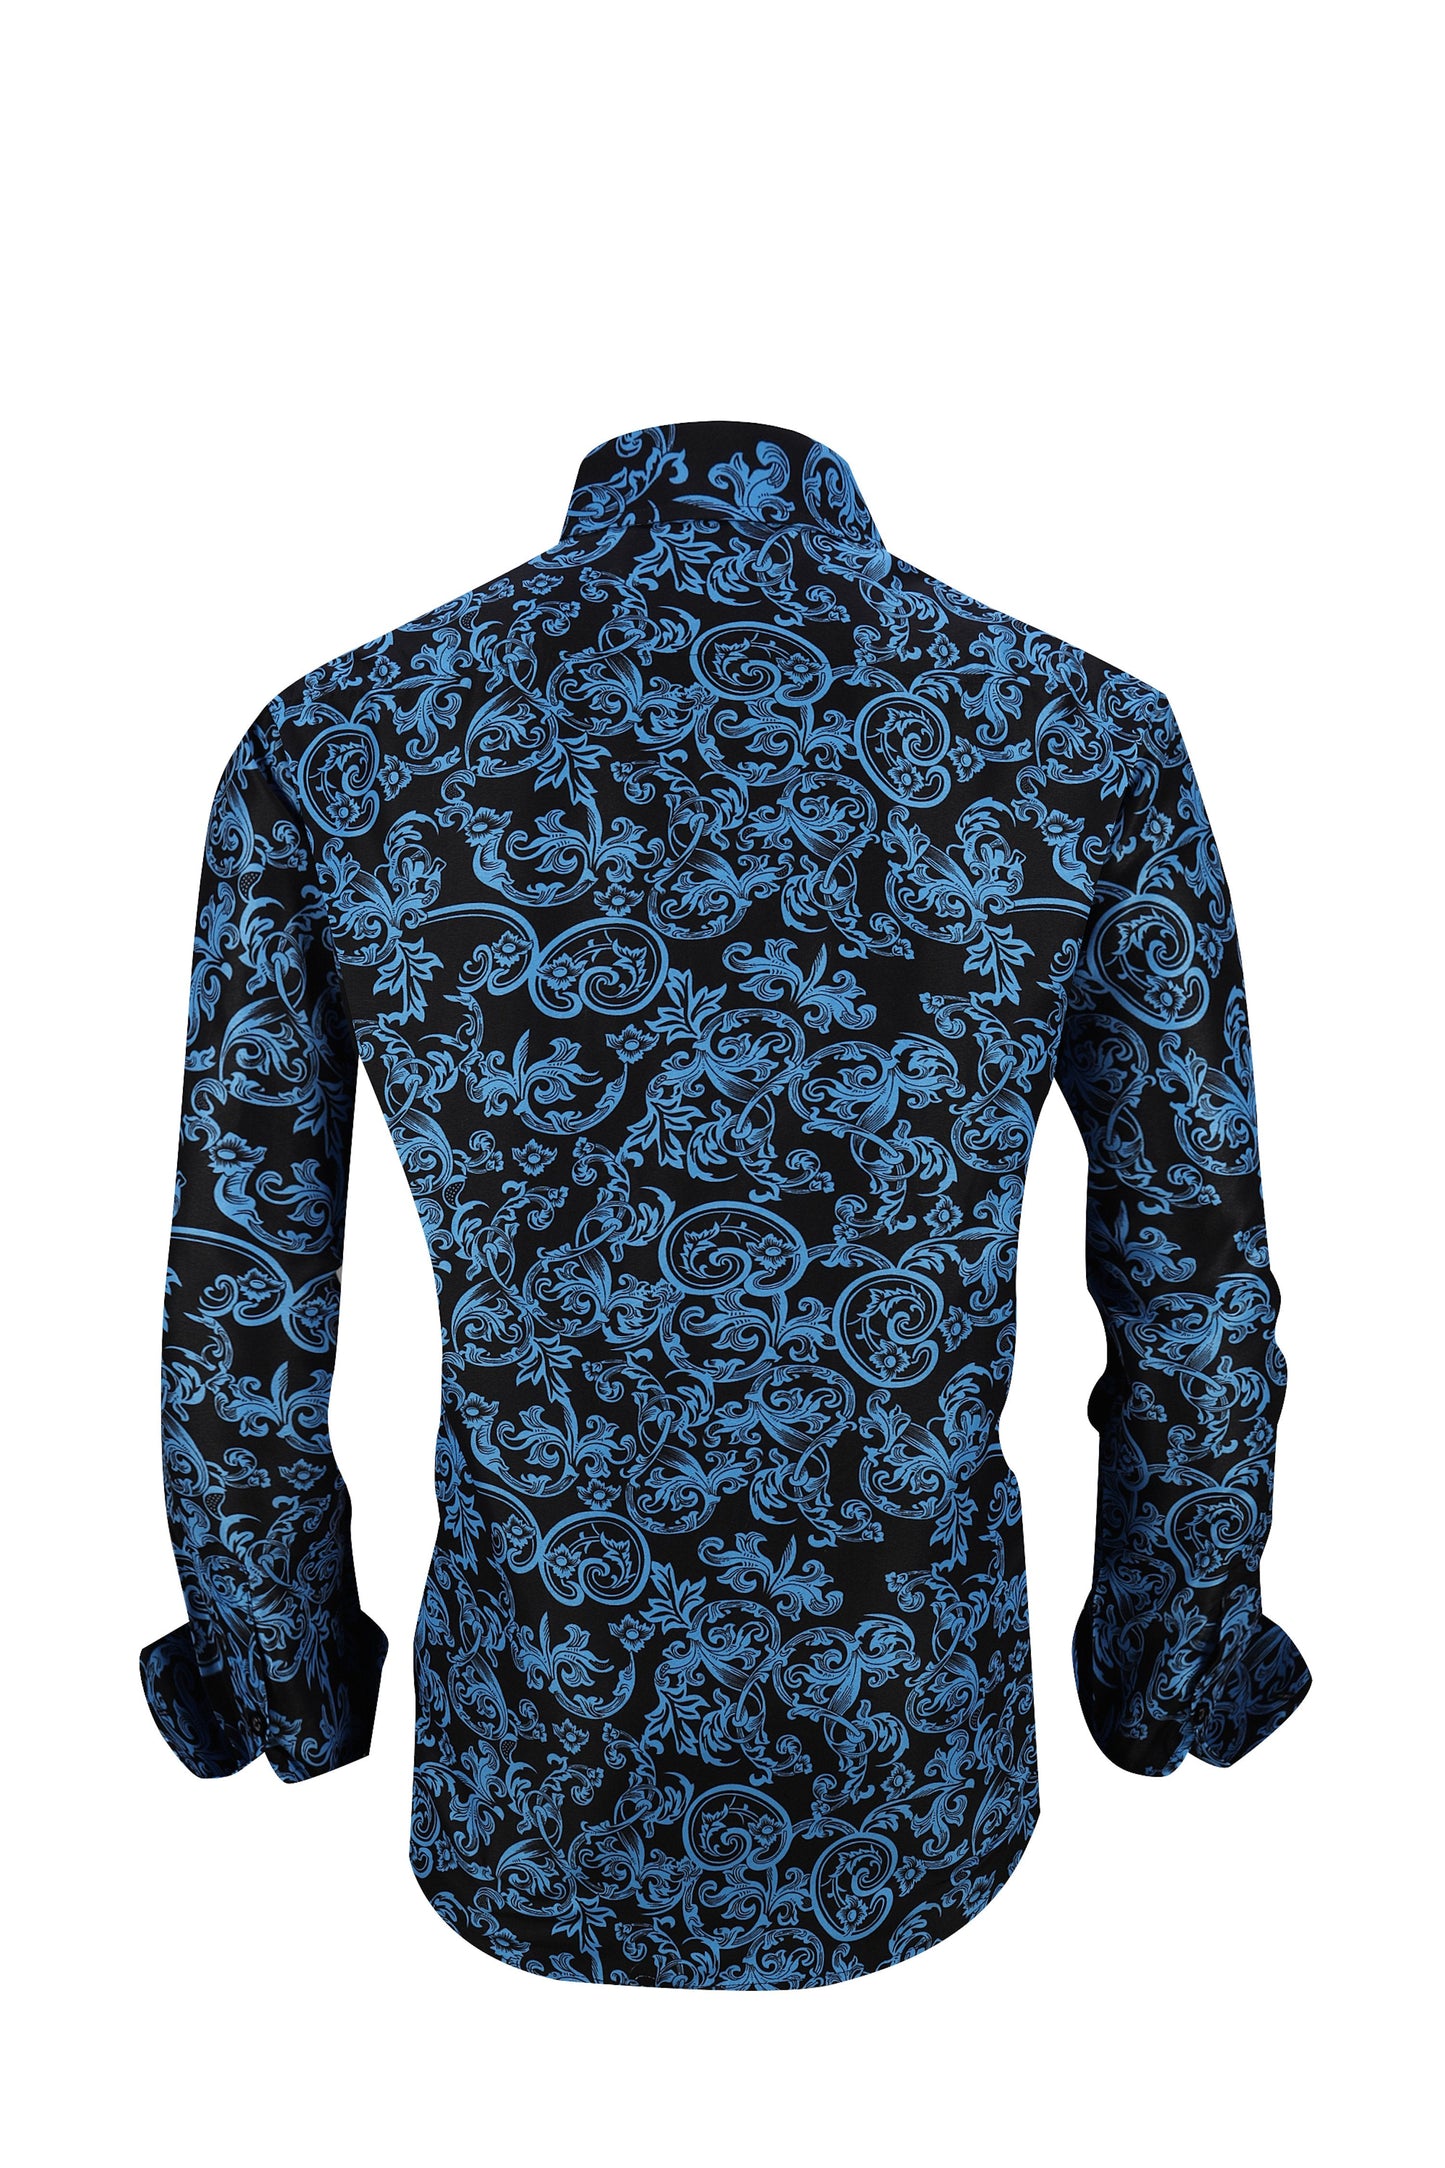 Men PREMIERE Long Sleeve Button Up Dress Shirt Blue Black Paisley